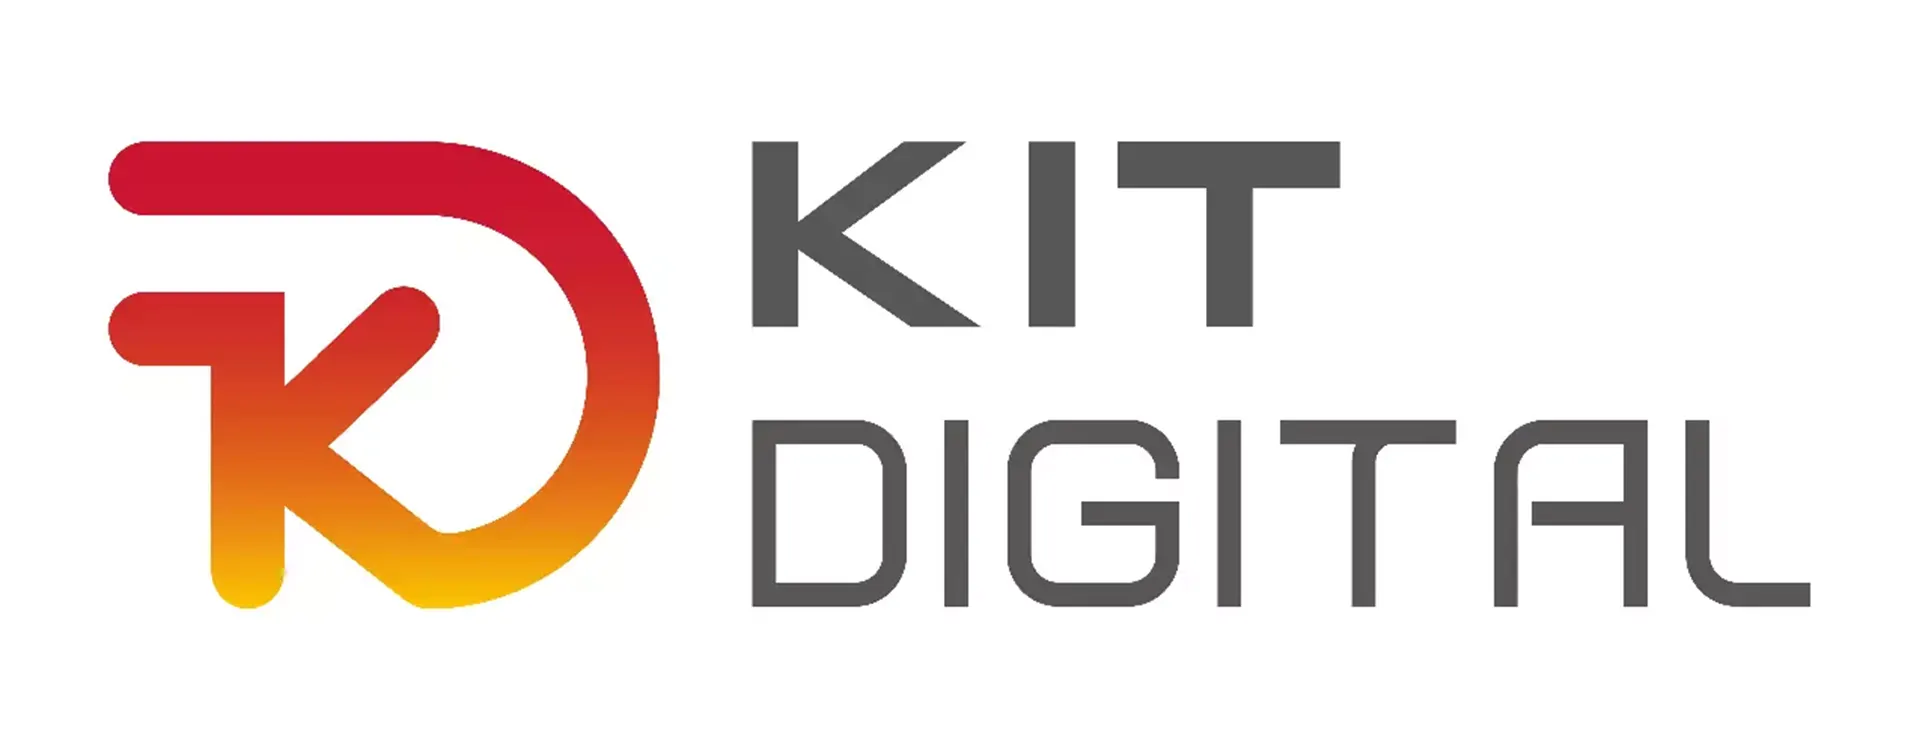 Cómo solicitar el Kit Digital